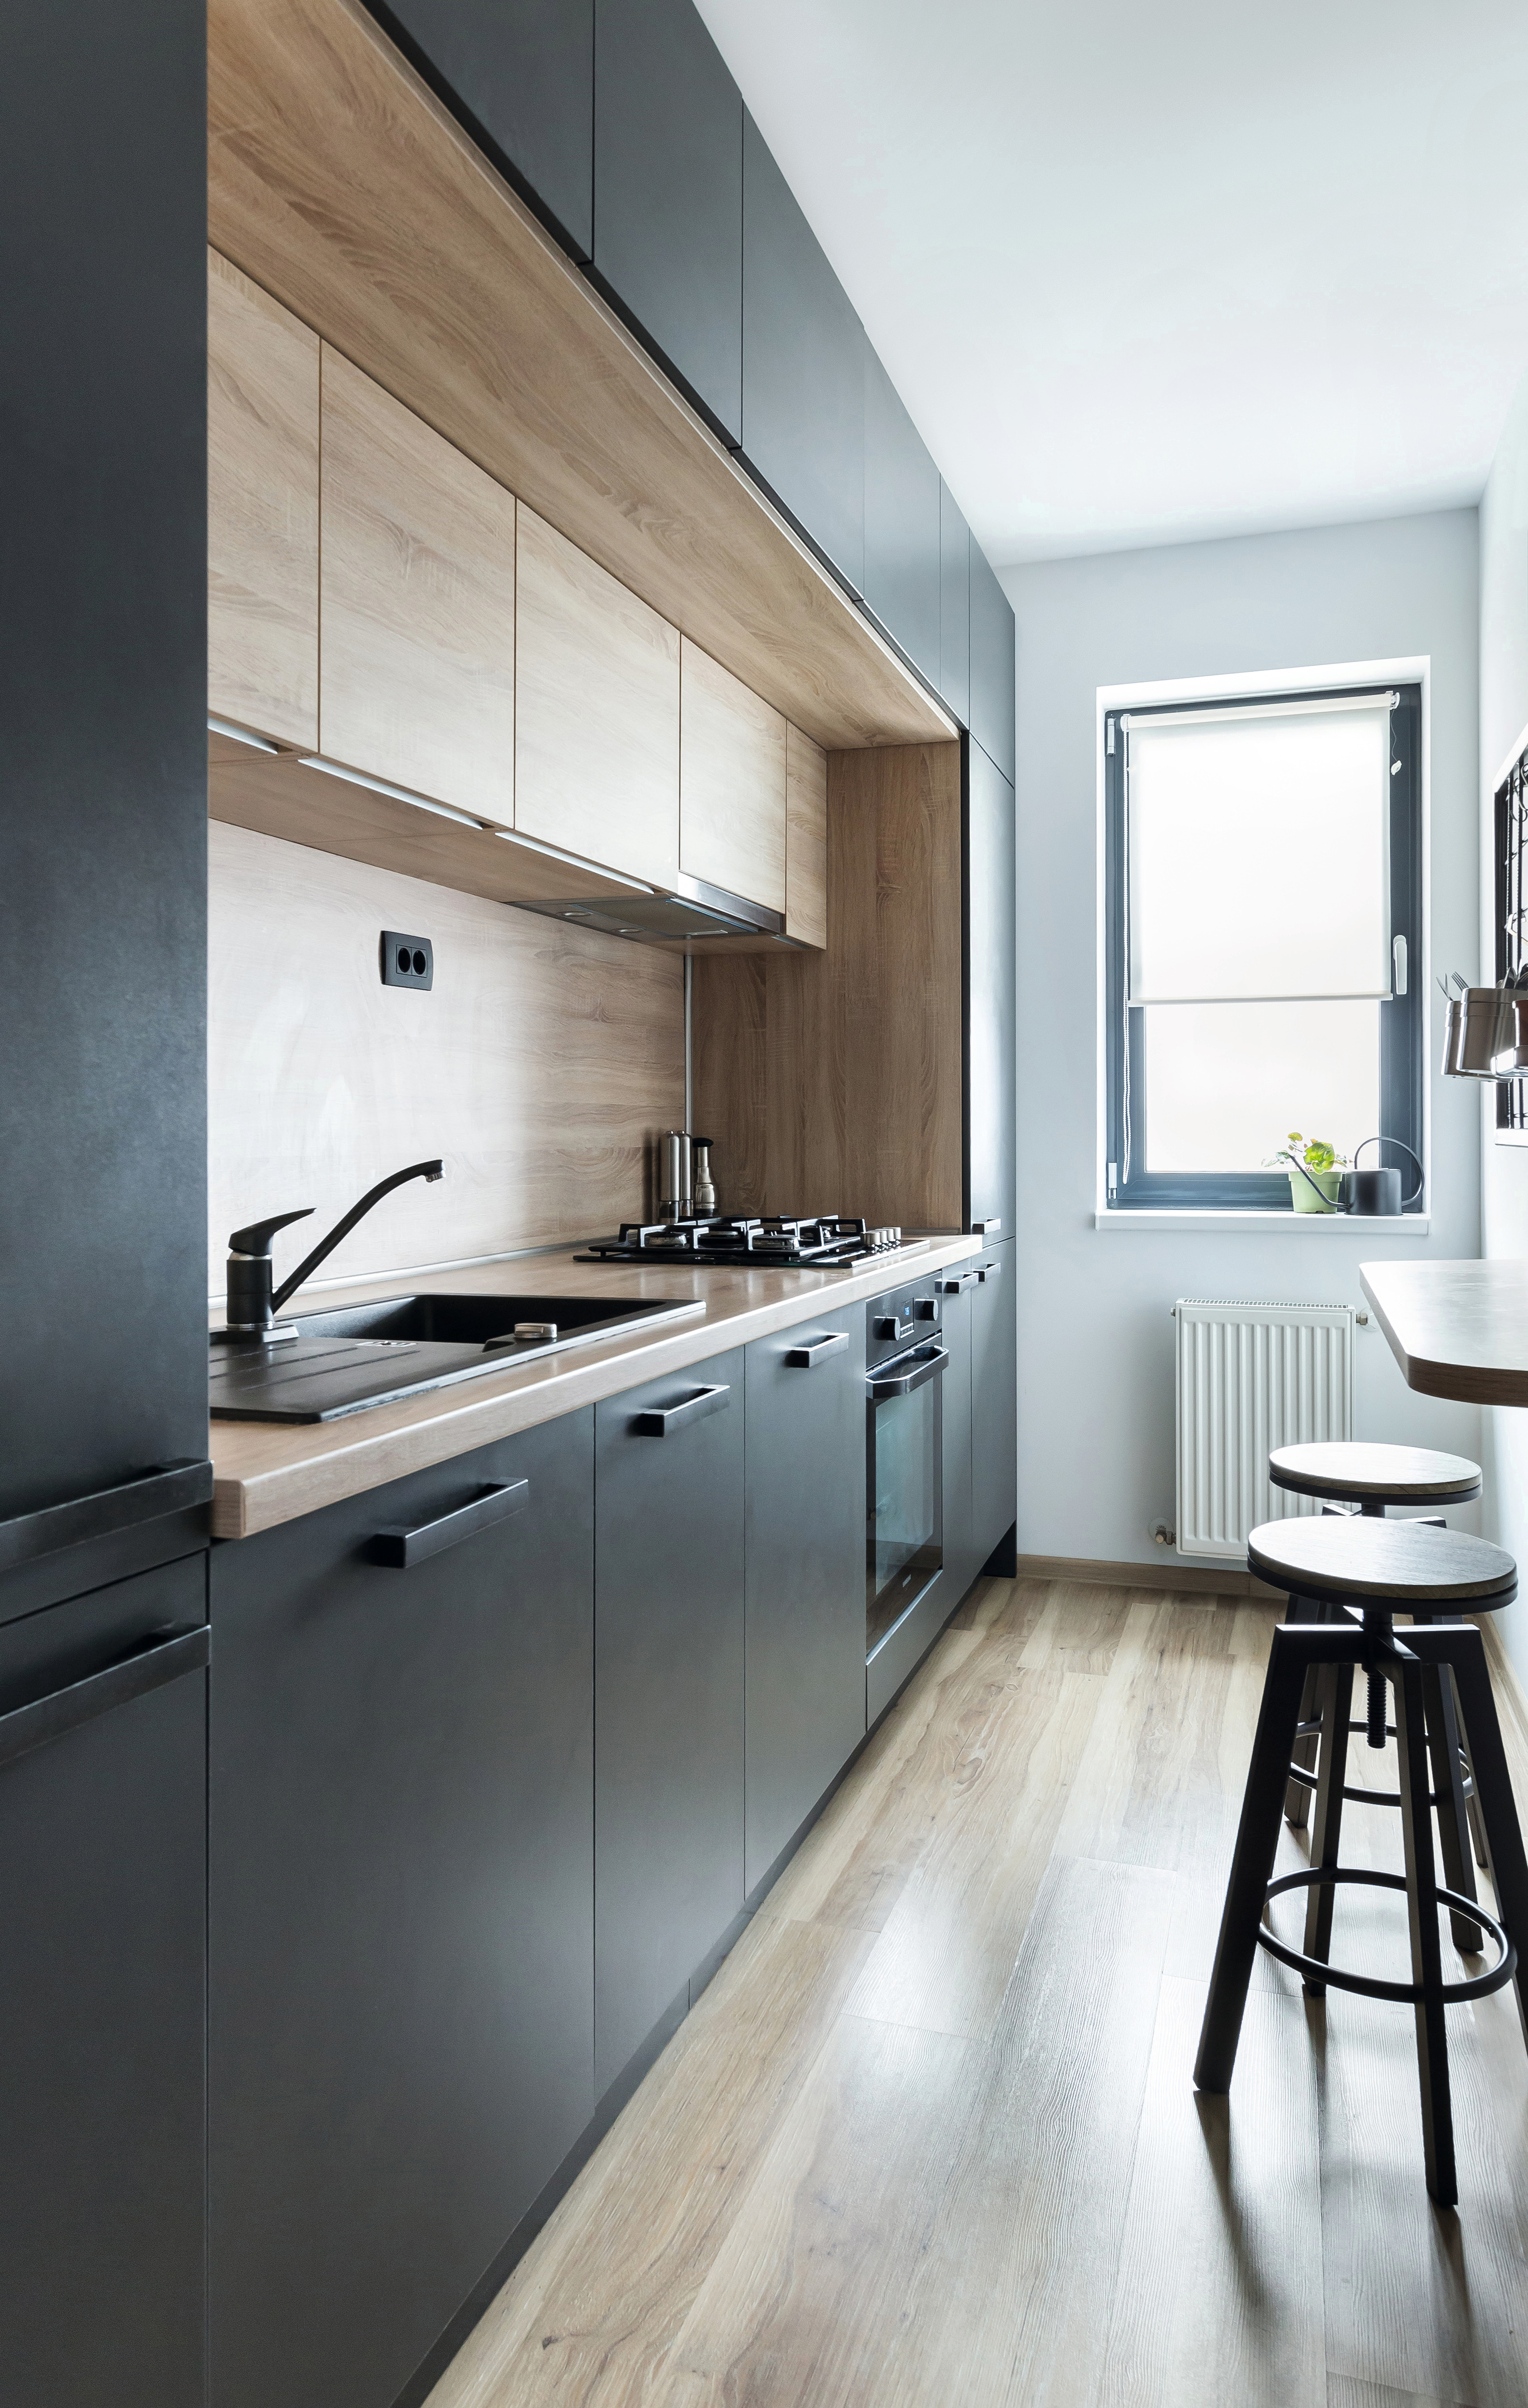 La acertada elección de colores y la disposición geométrica crean una cocina moderna.